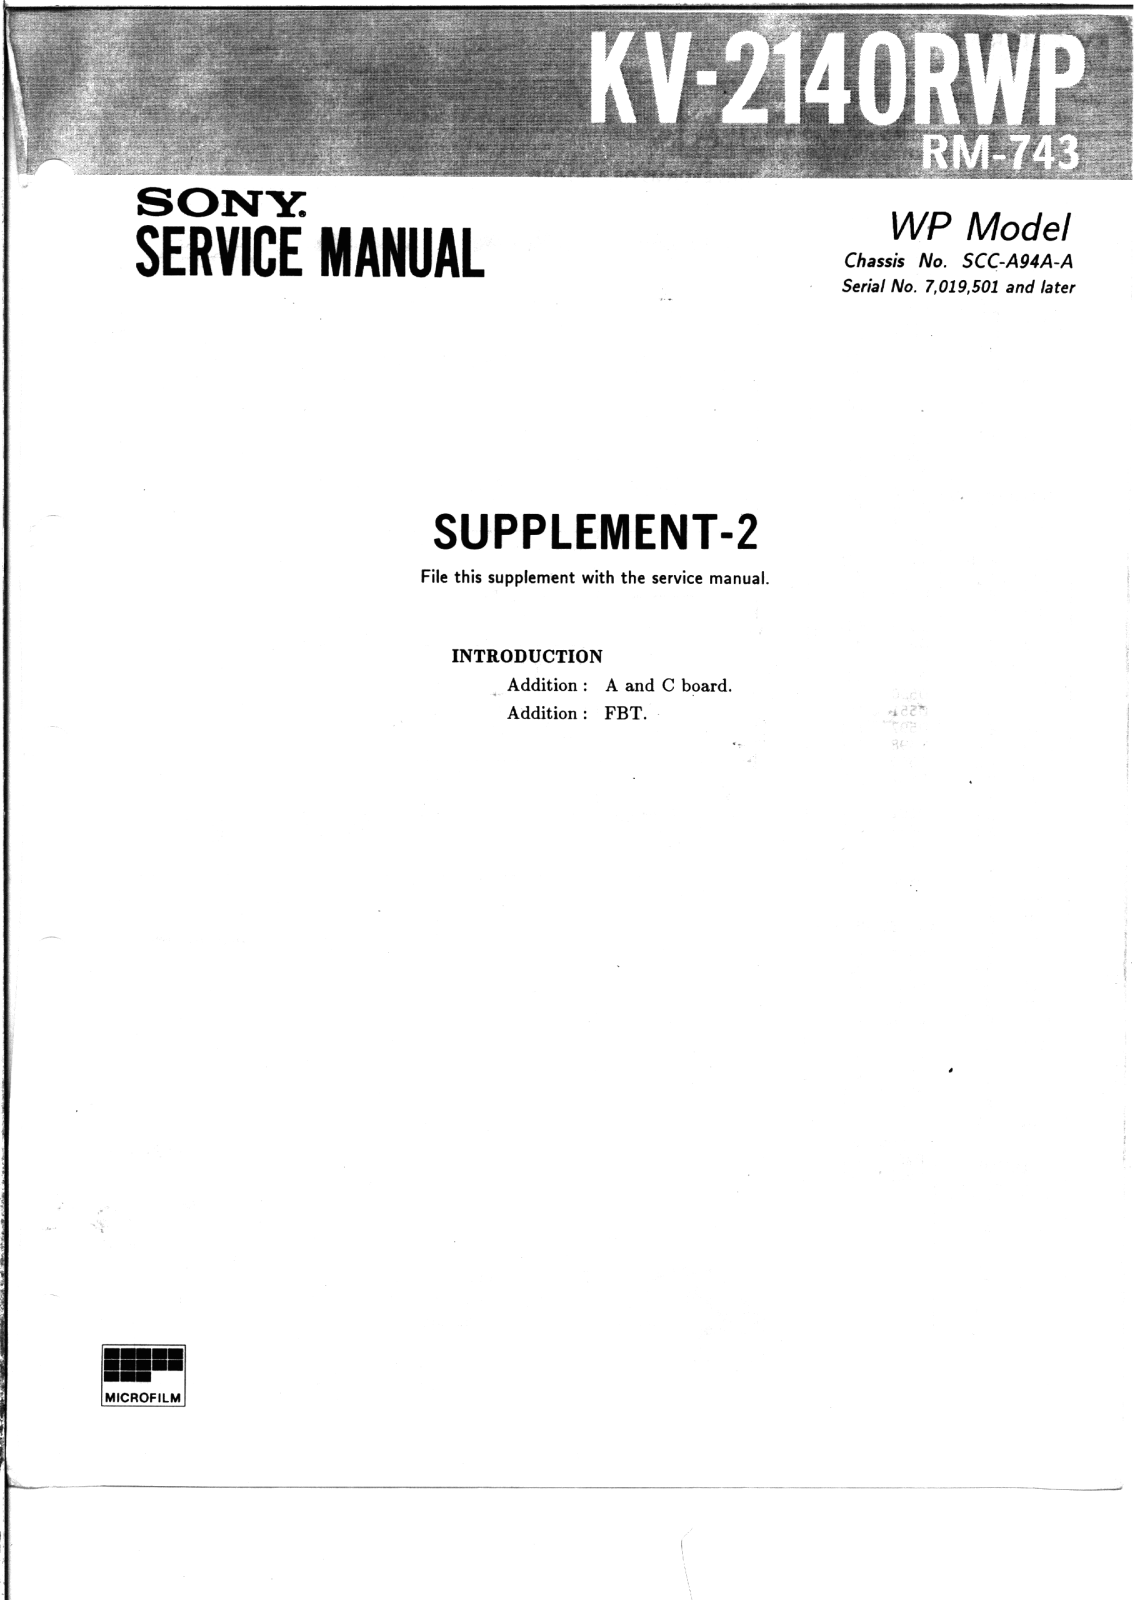 SONY KV 2140RWP Service Manual